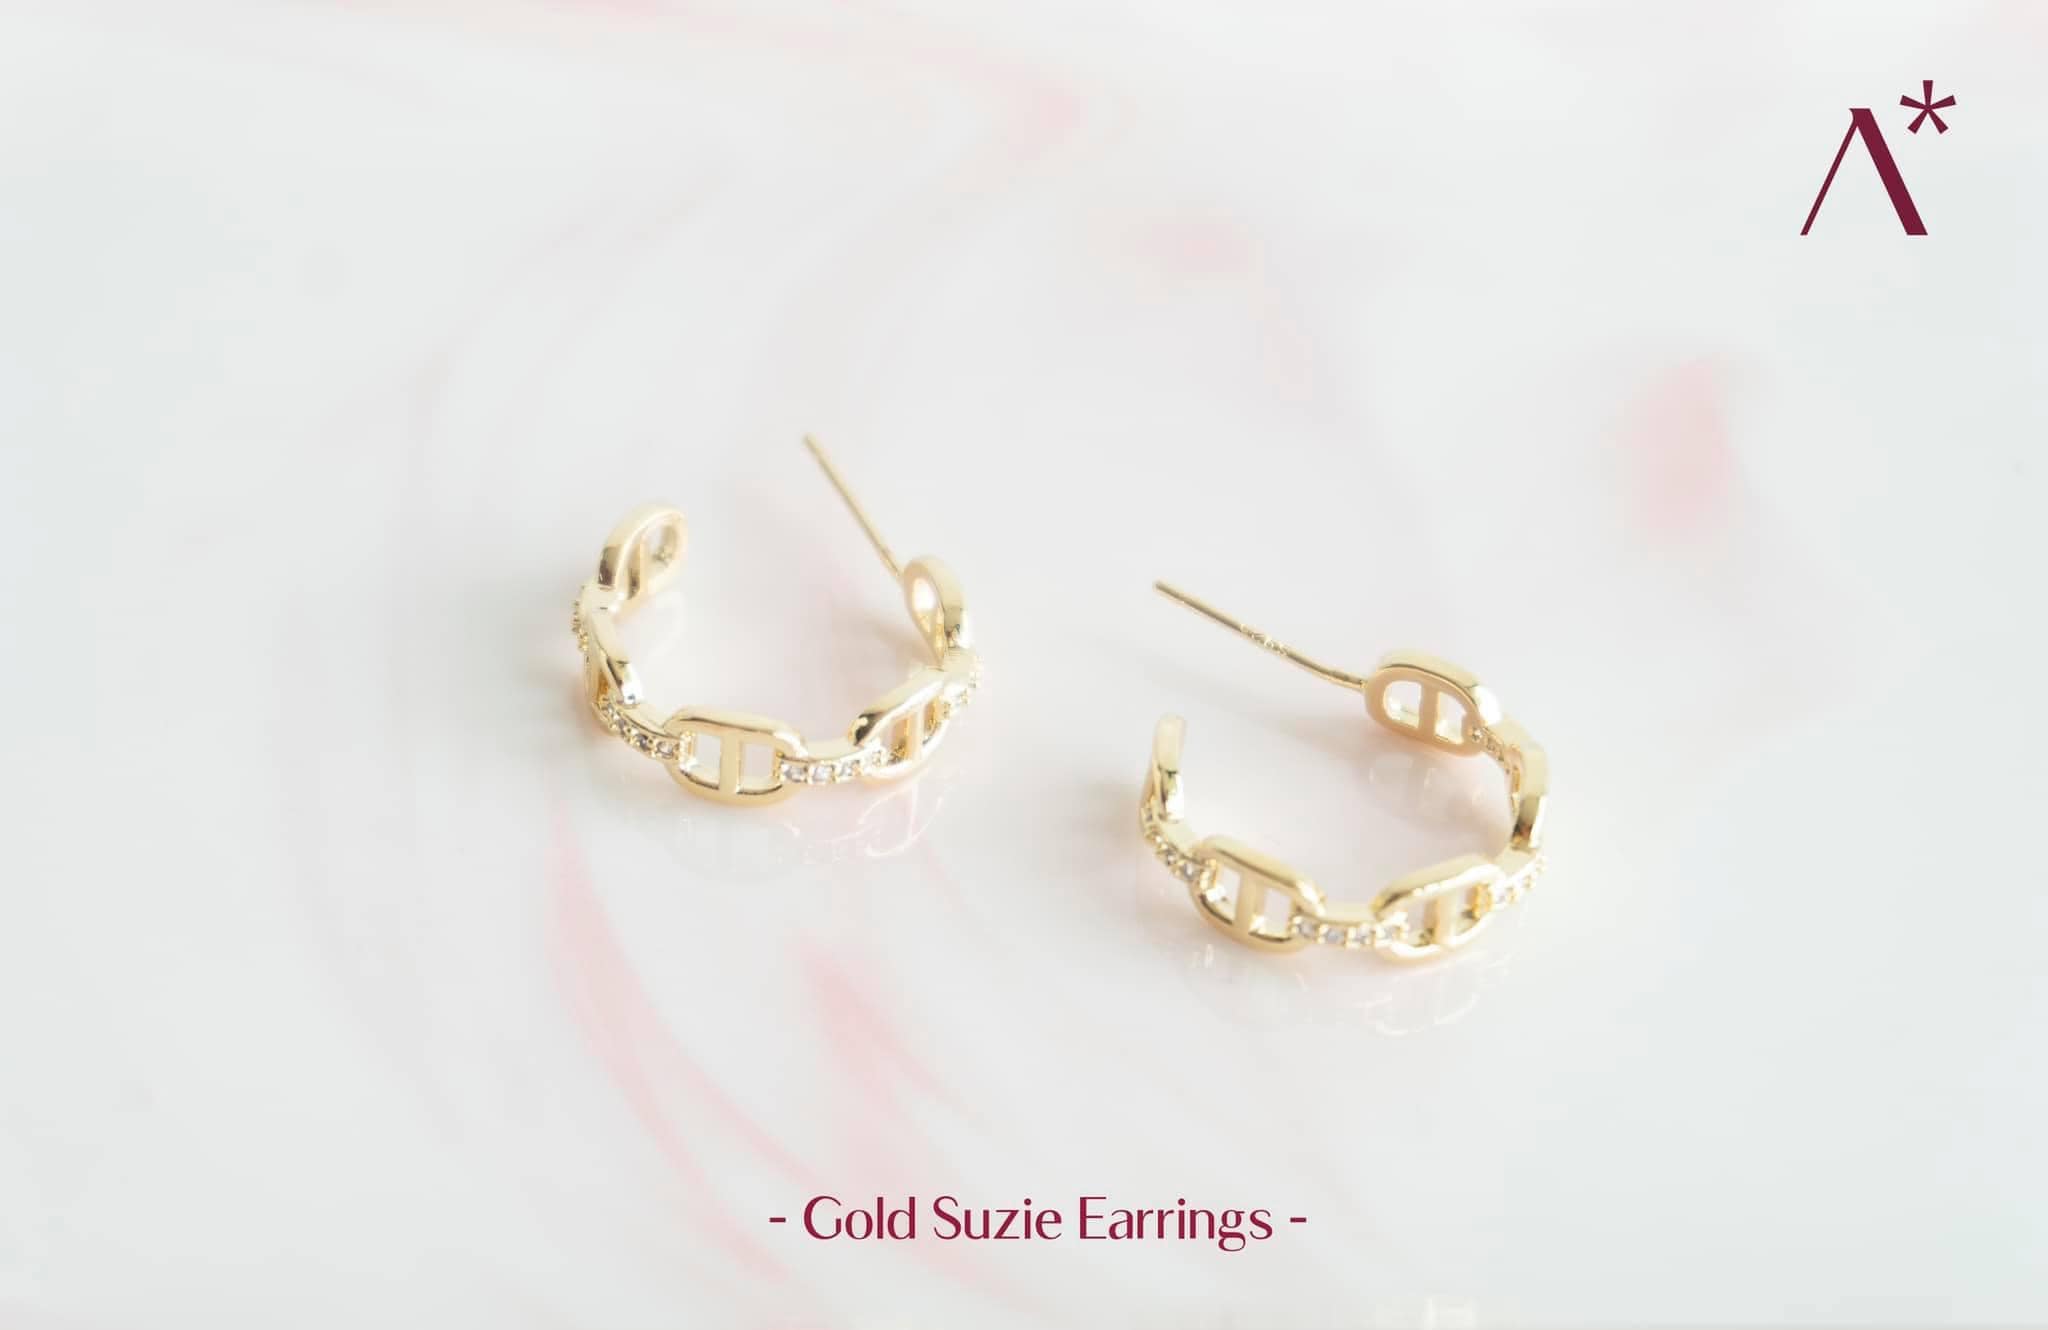 Gold Suzie Earrings